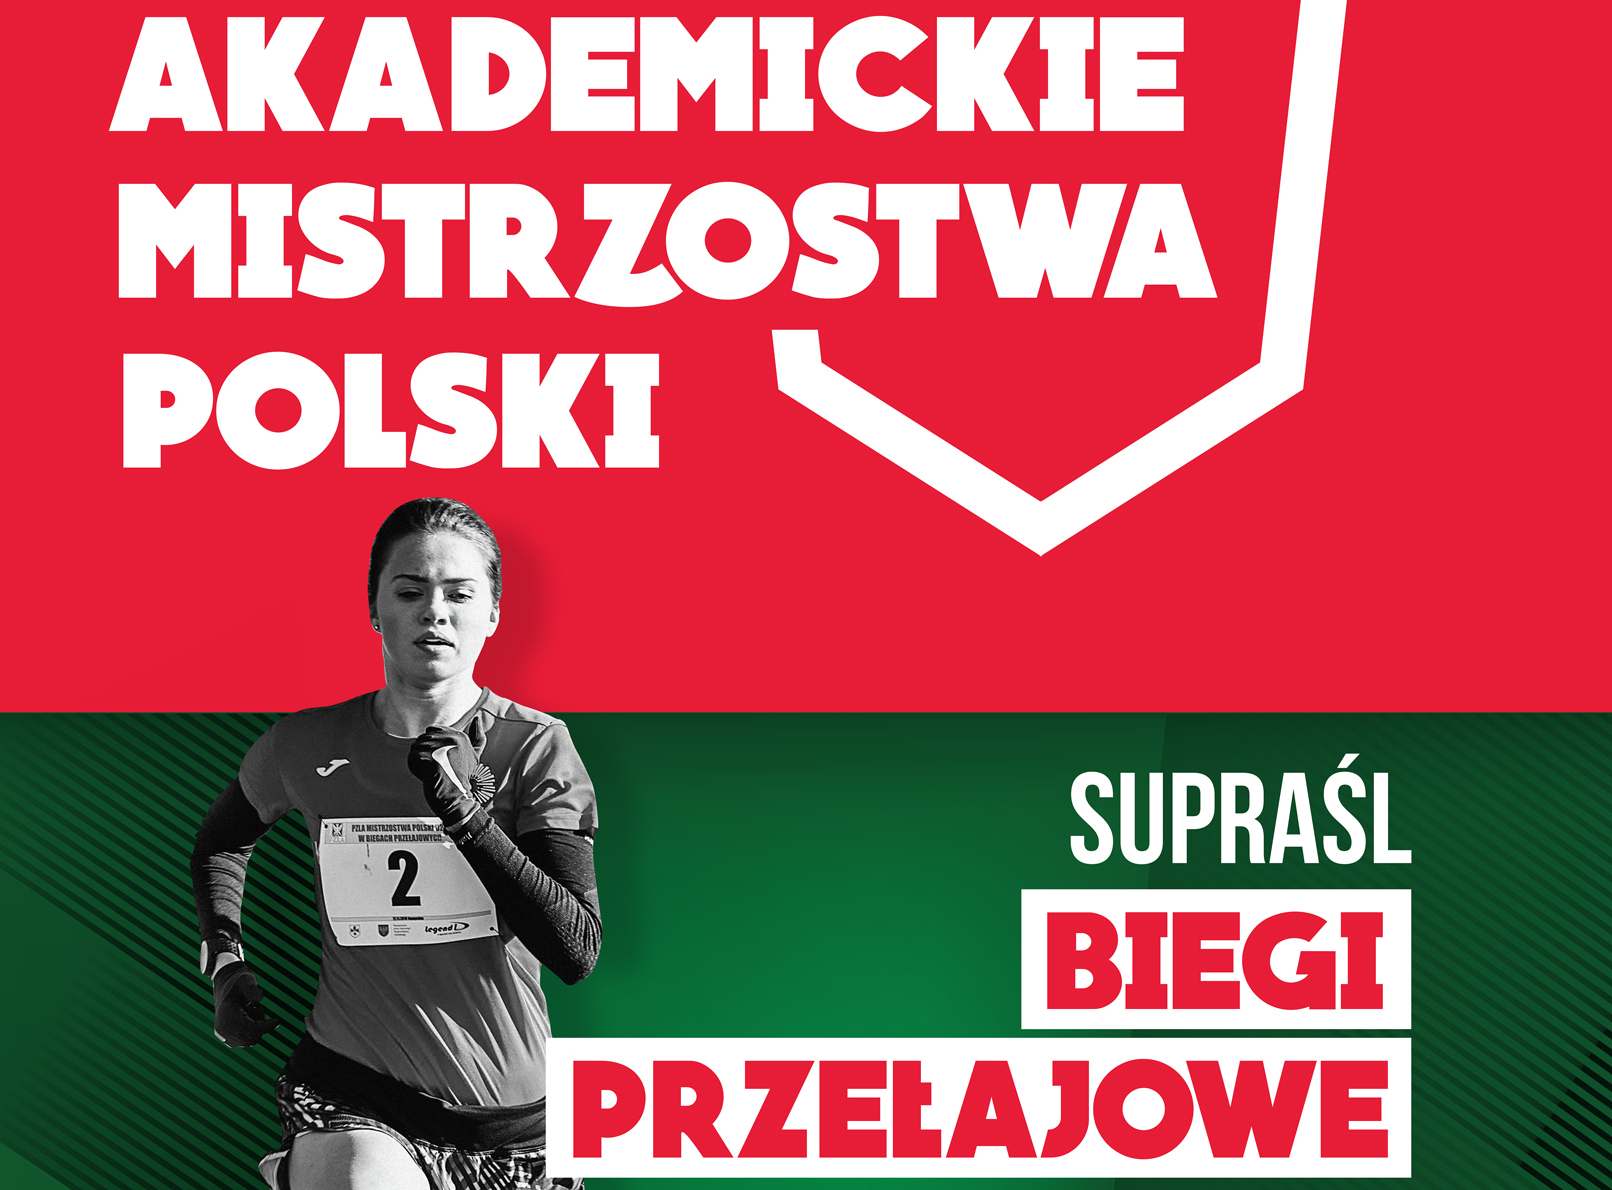 Akademickie Mistrzostwa Polski w Biegach Przełajowych w Supraślu